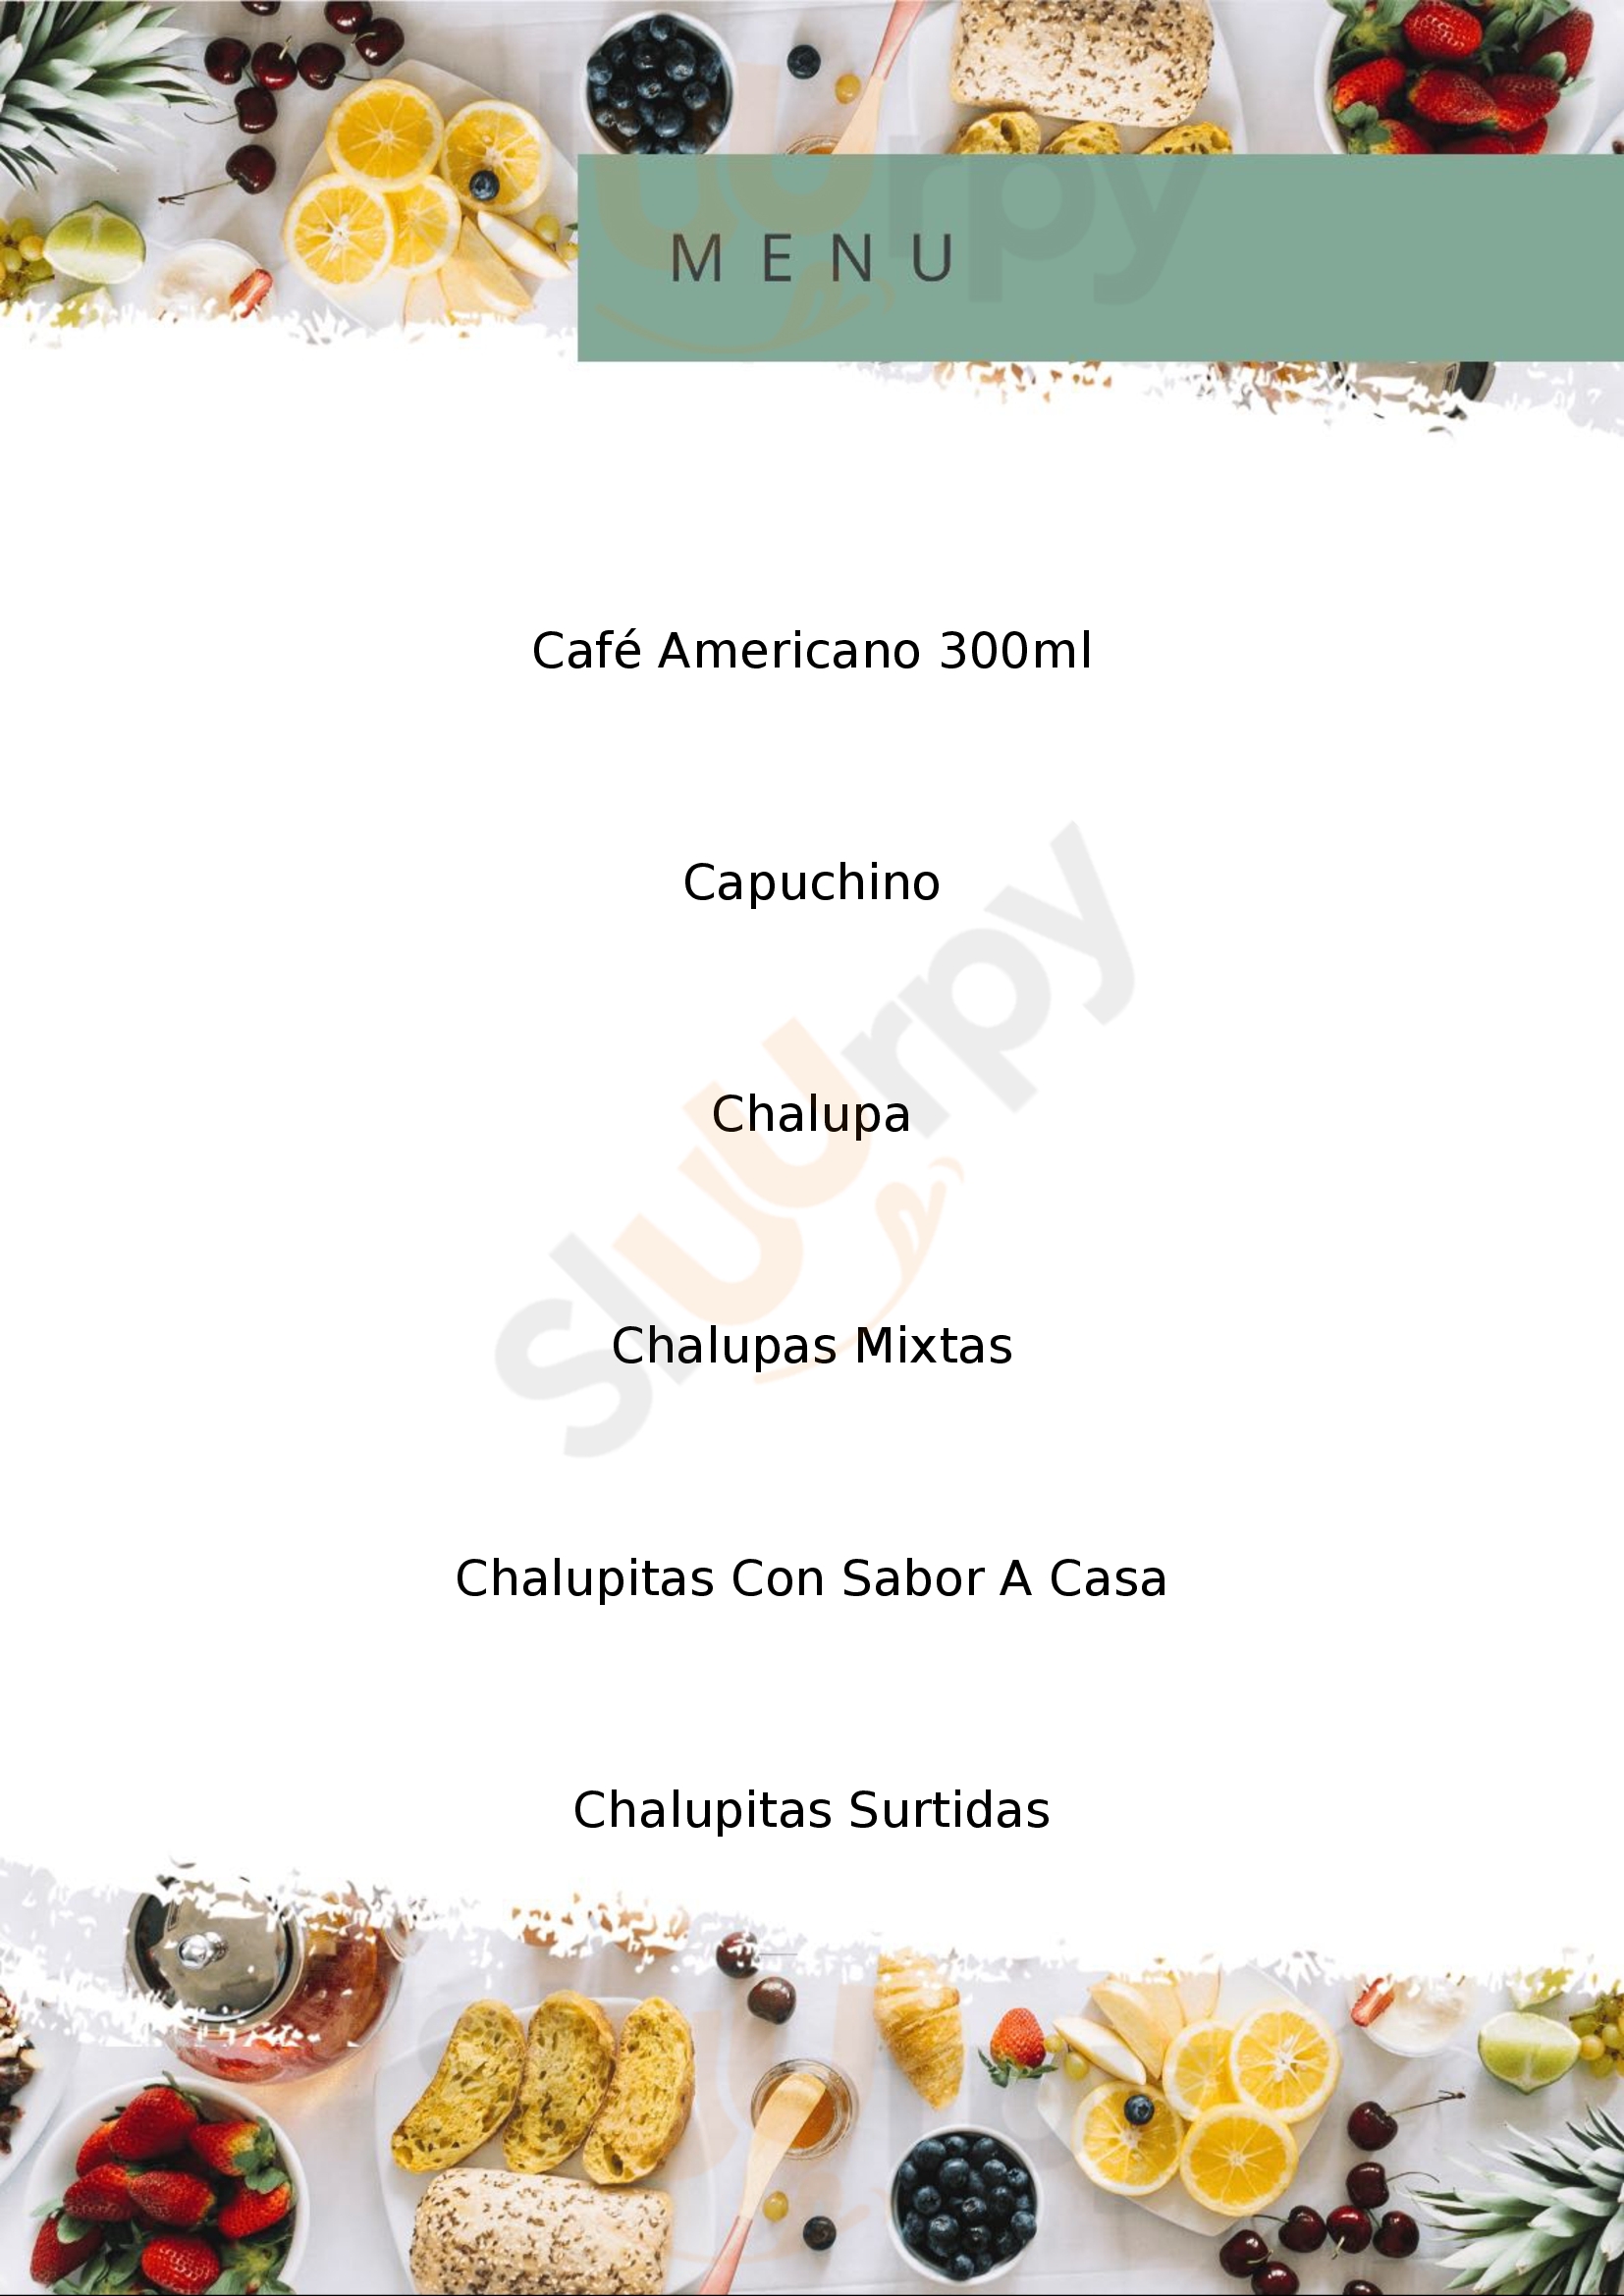 Las Chalupitas Ciudad de México Menu - 1